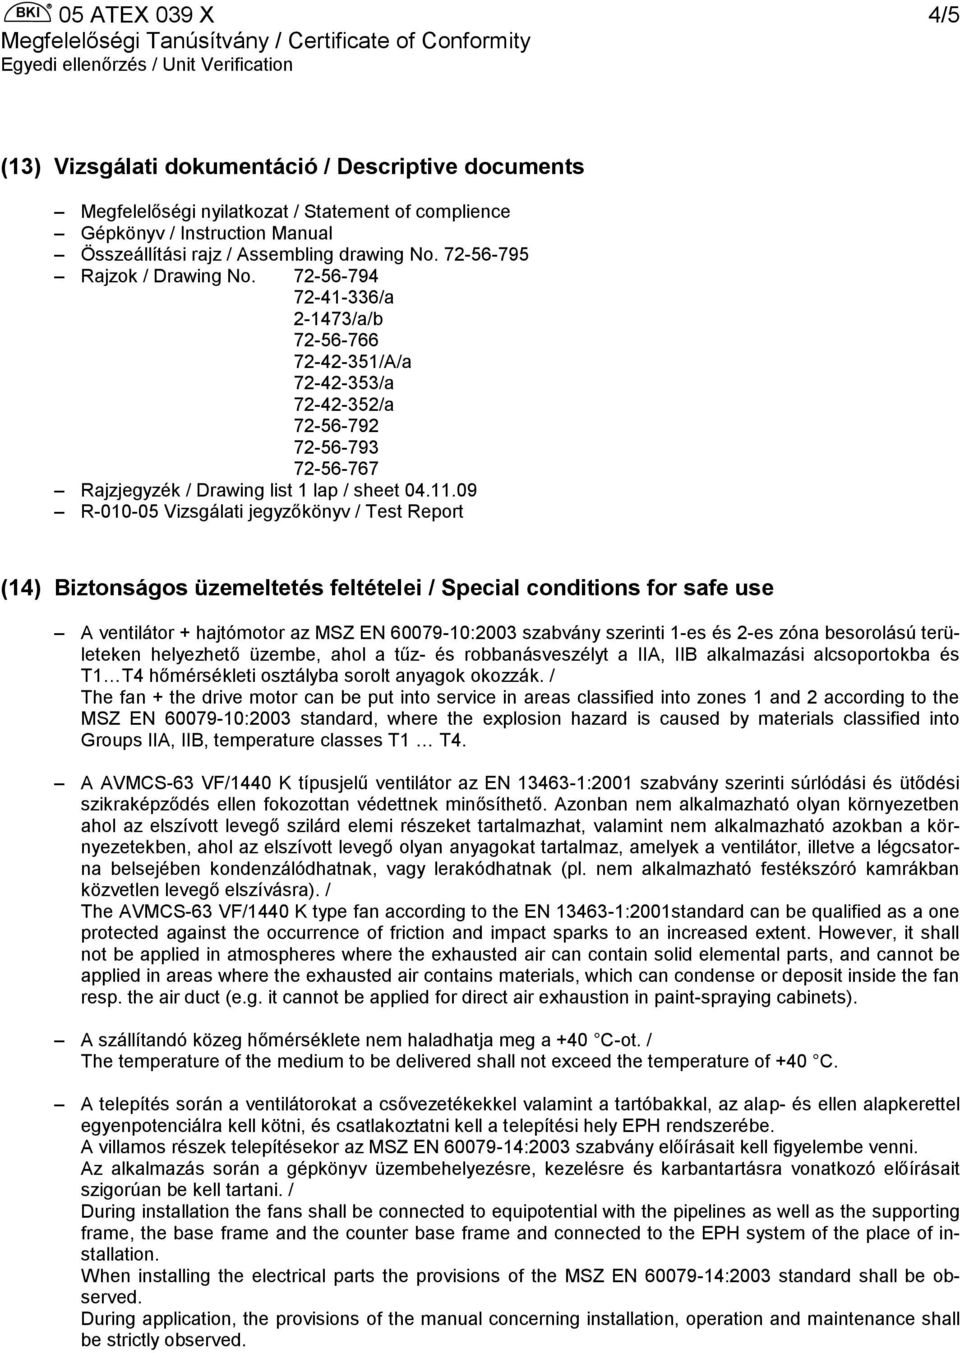 09 R-010-05 Vizsgálati jegyzőkönyv / Test Report (14) Biztonságos üzemeltetés feltételei / Special conditions for safe use A ventilátor + hajtómotor az MSZ EN 60079-10:2003 szabvány szerinti 1-es és